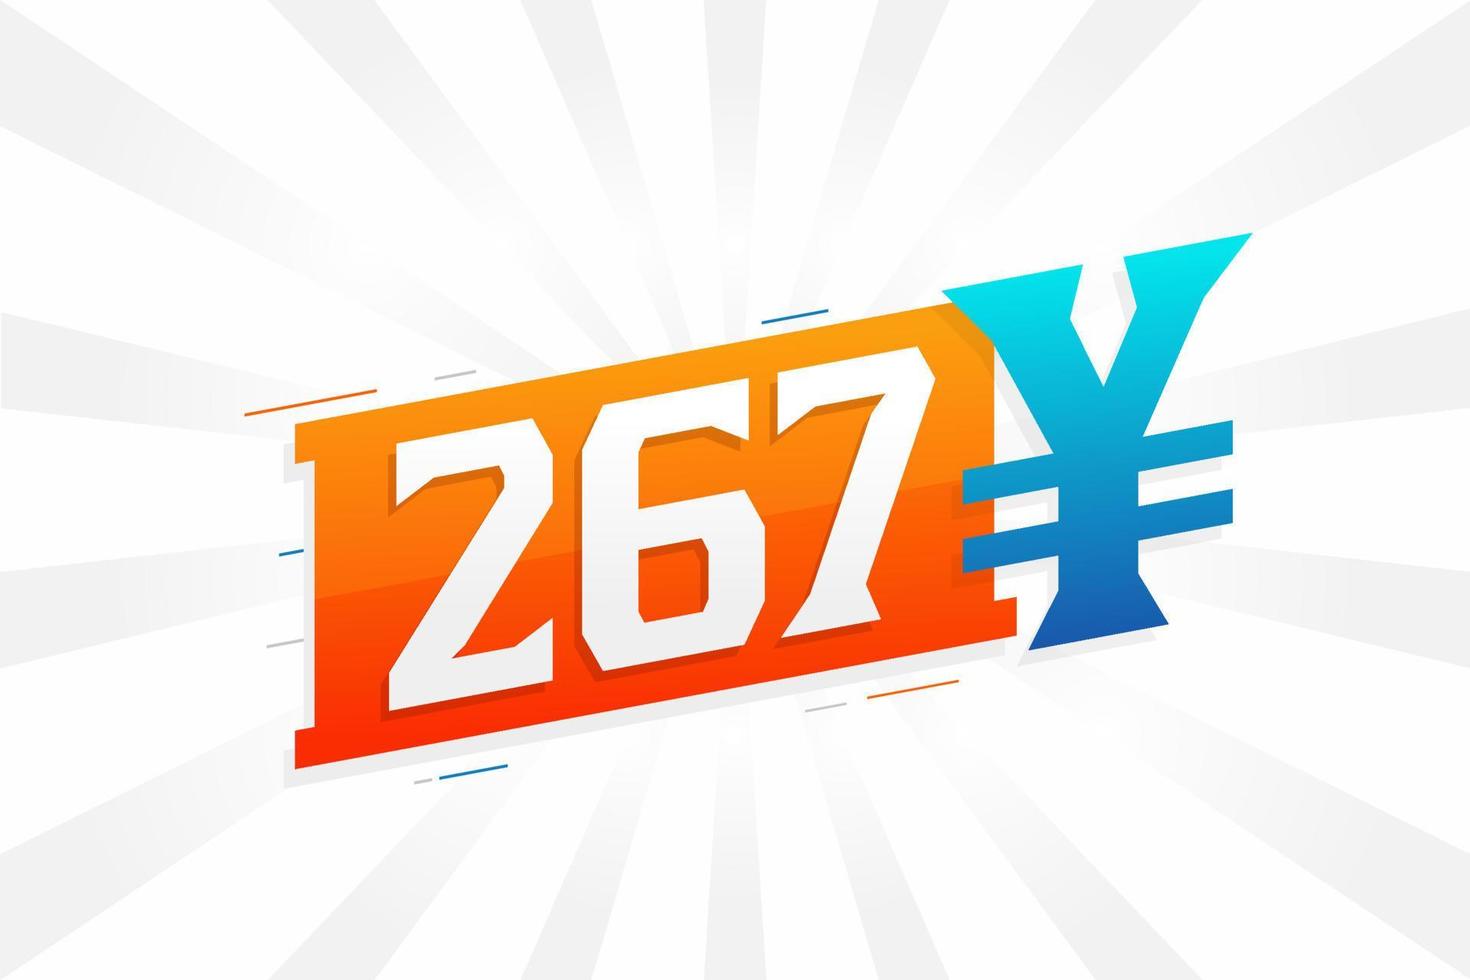 Símbolo de texto vectorial de moneda china de 267 yuanes. 267 yen moneda japonesa dinero stock vector